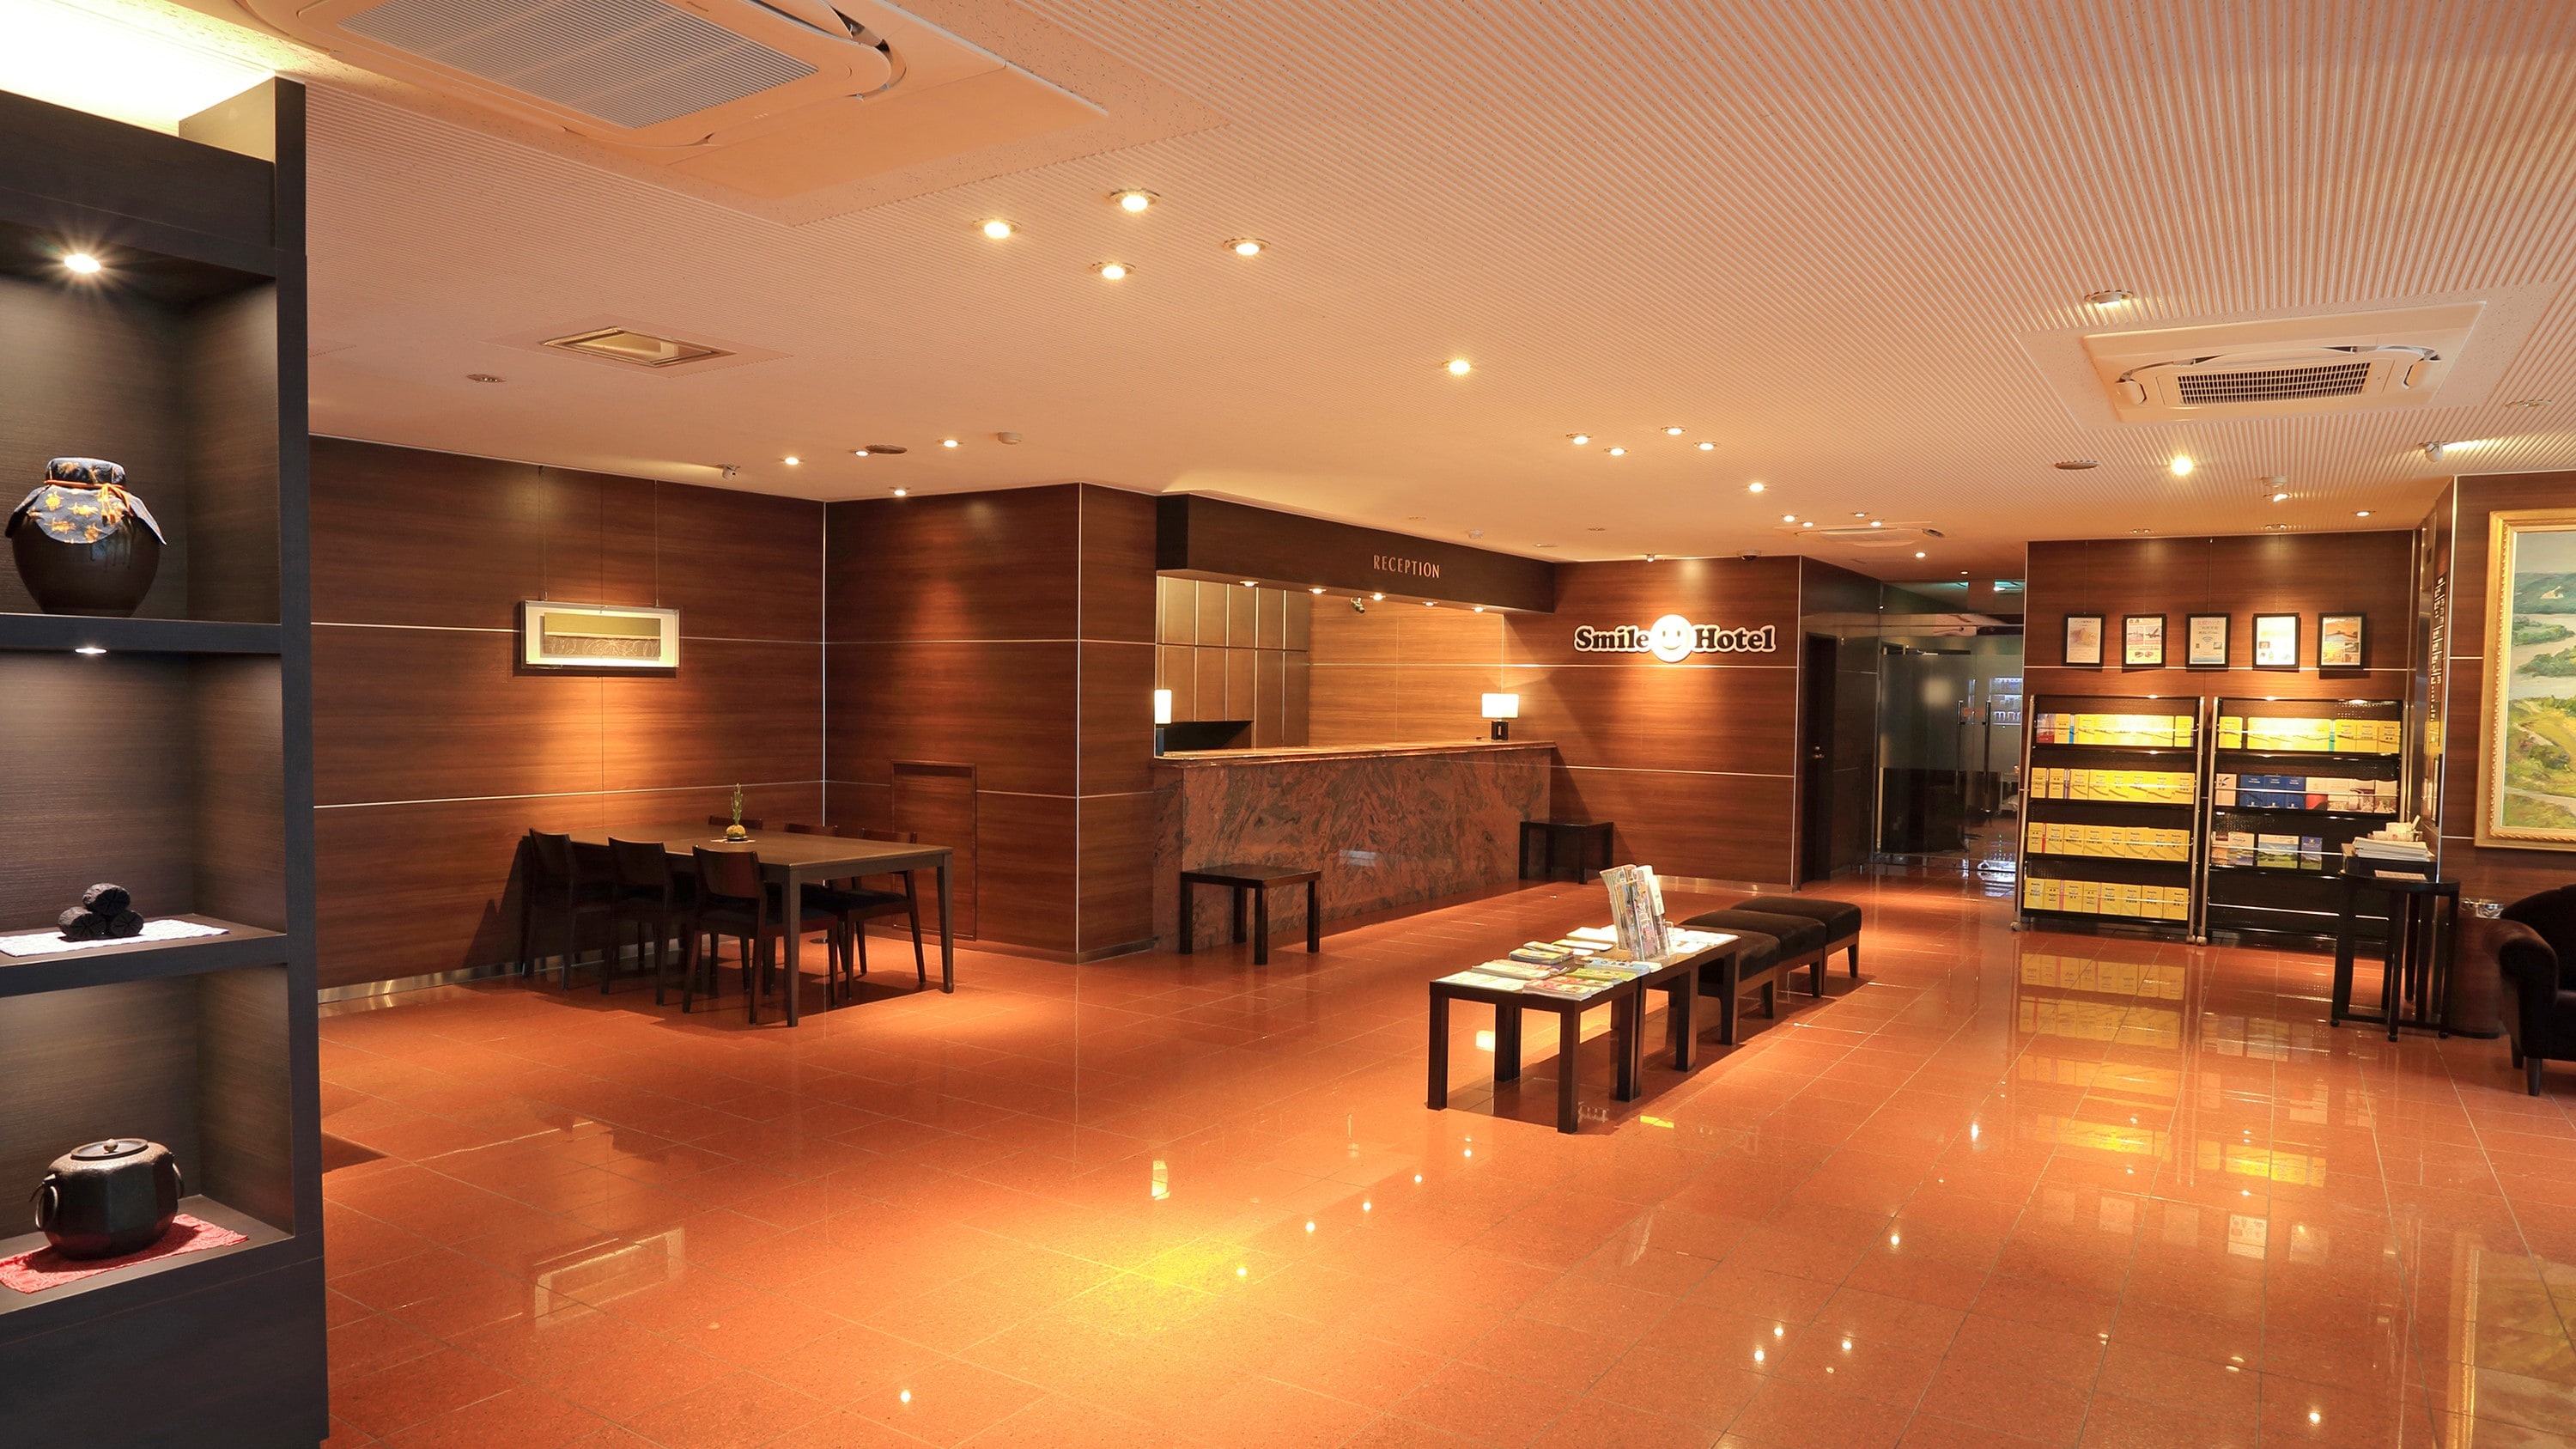 Lobi lantai 1 modern dengan warna-warna tenang. Wi-Fi juga tersedia.